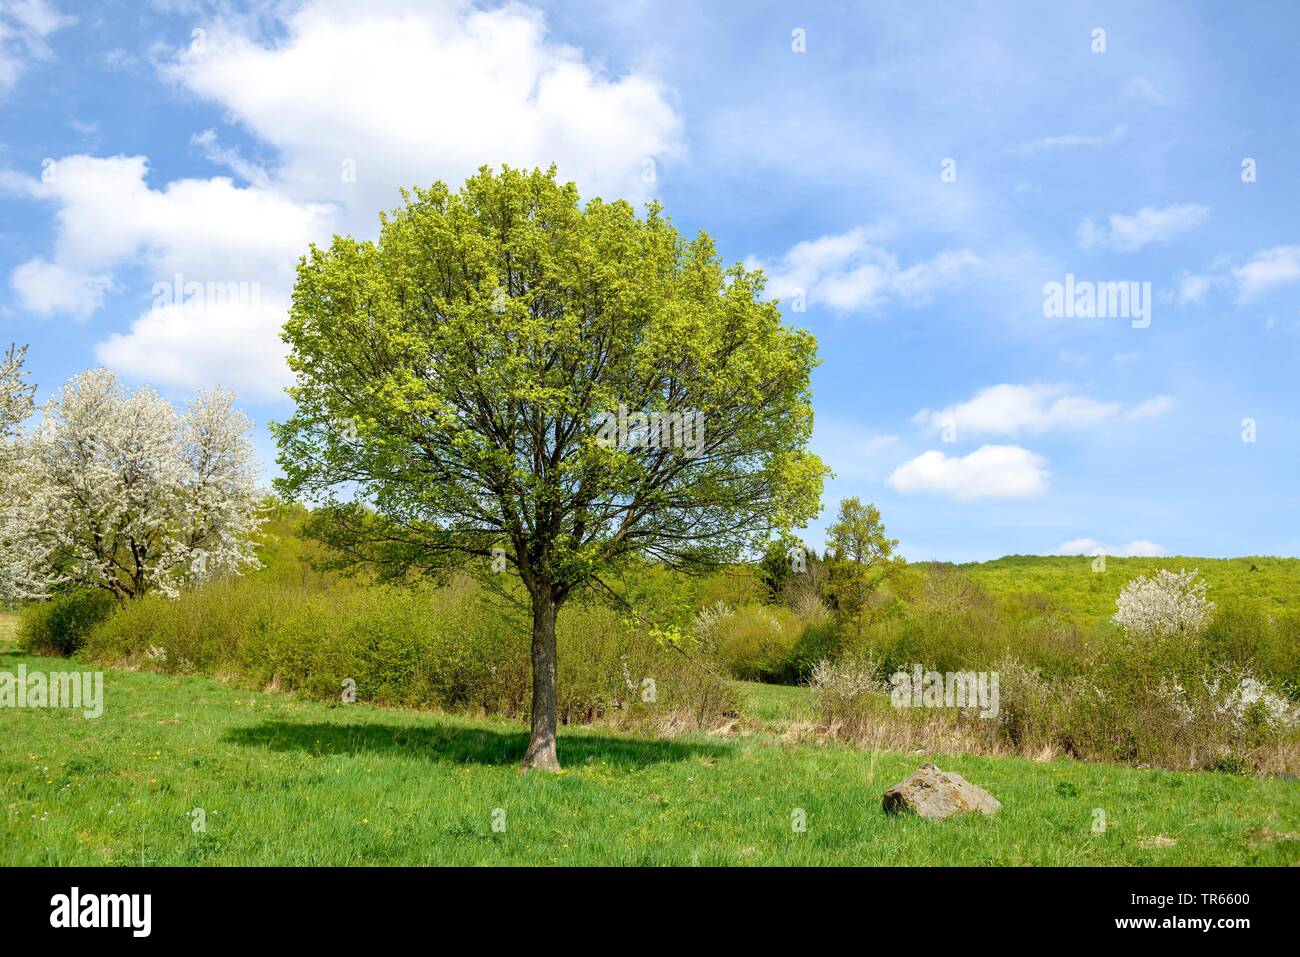 L'acero campestre, acero comune (Acer campestre), albero singolo su un prato, Germania Foto Stock